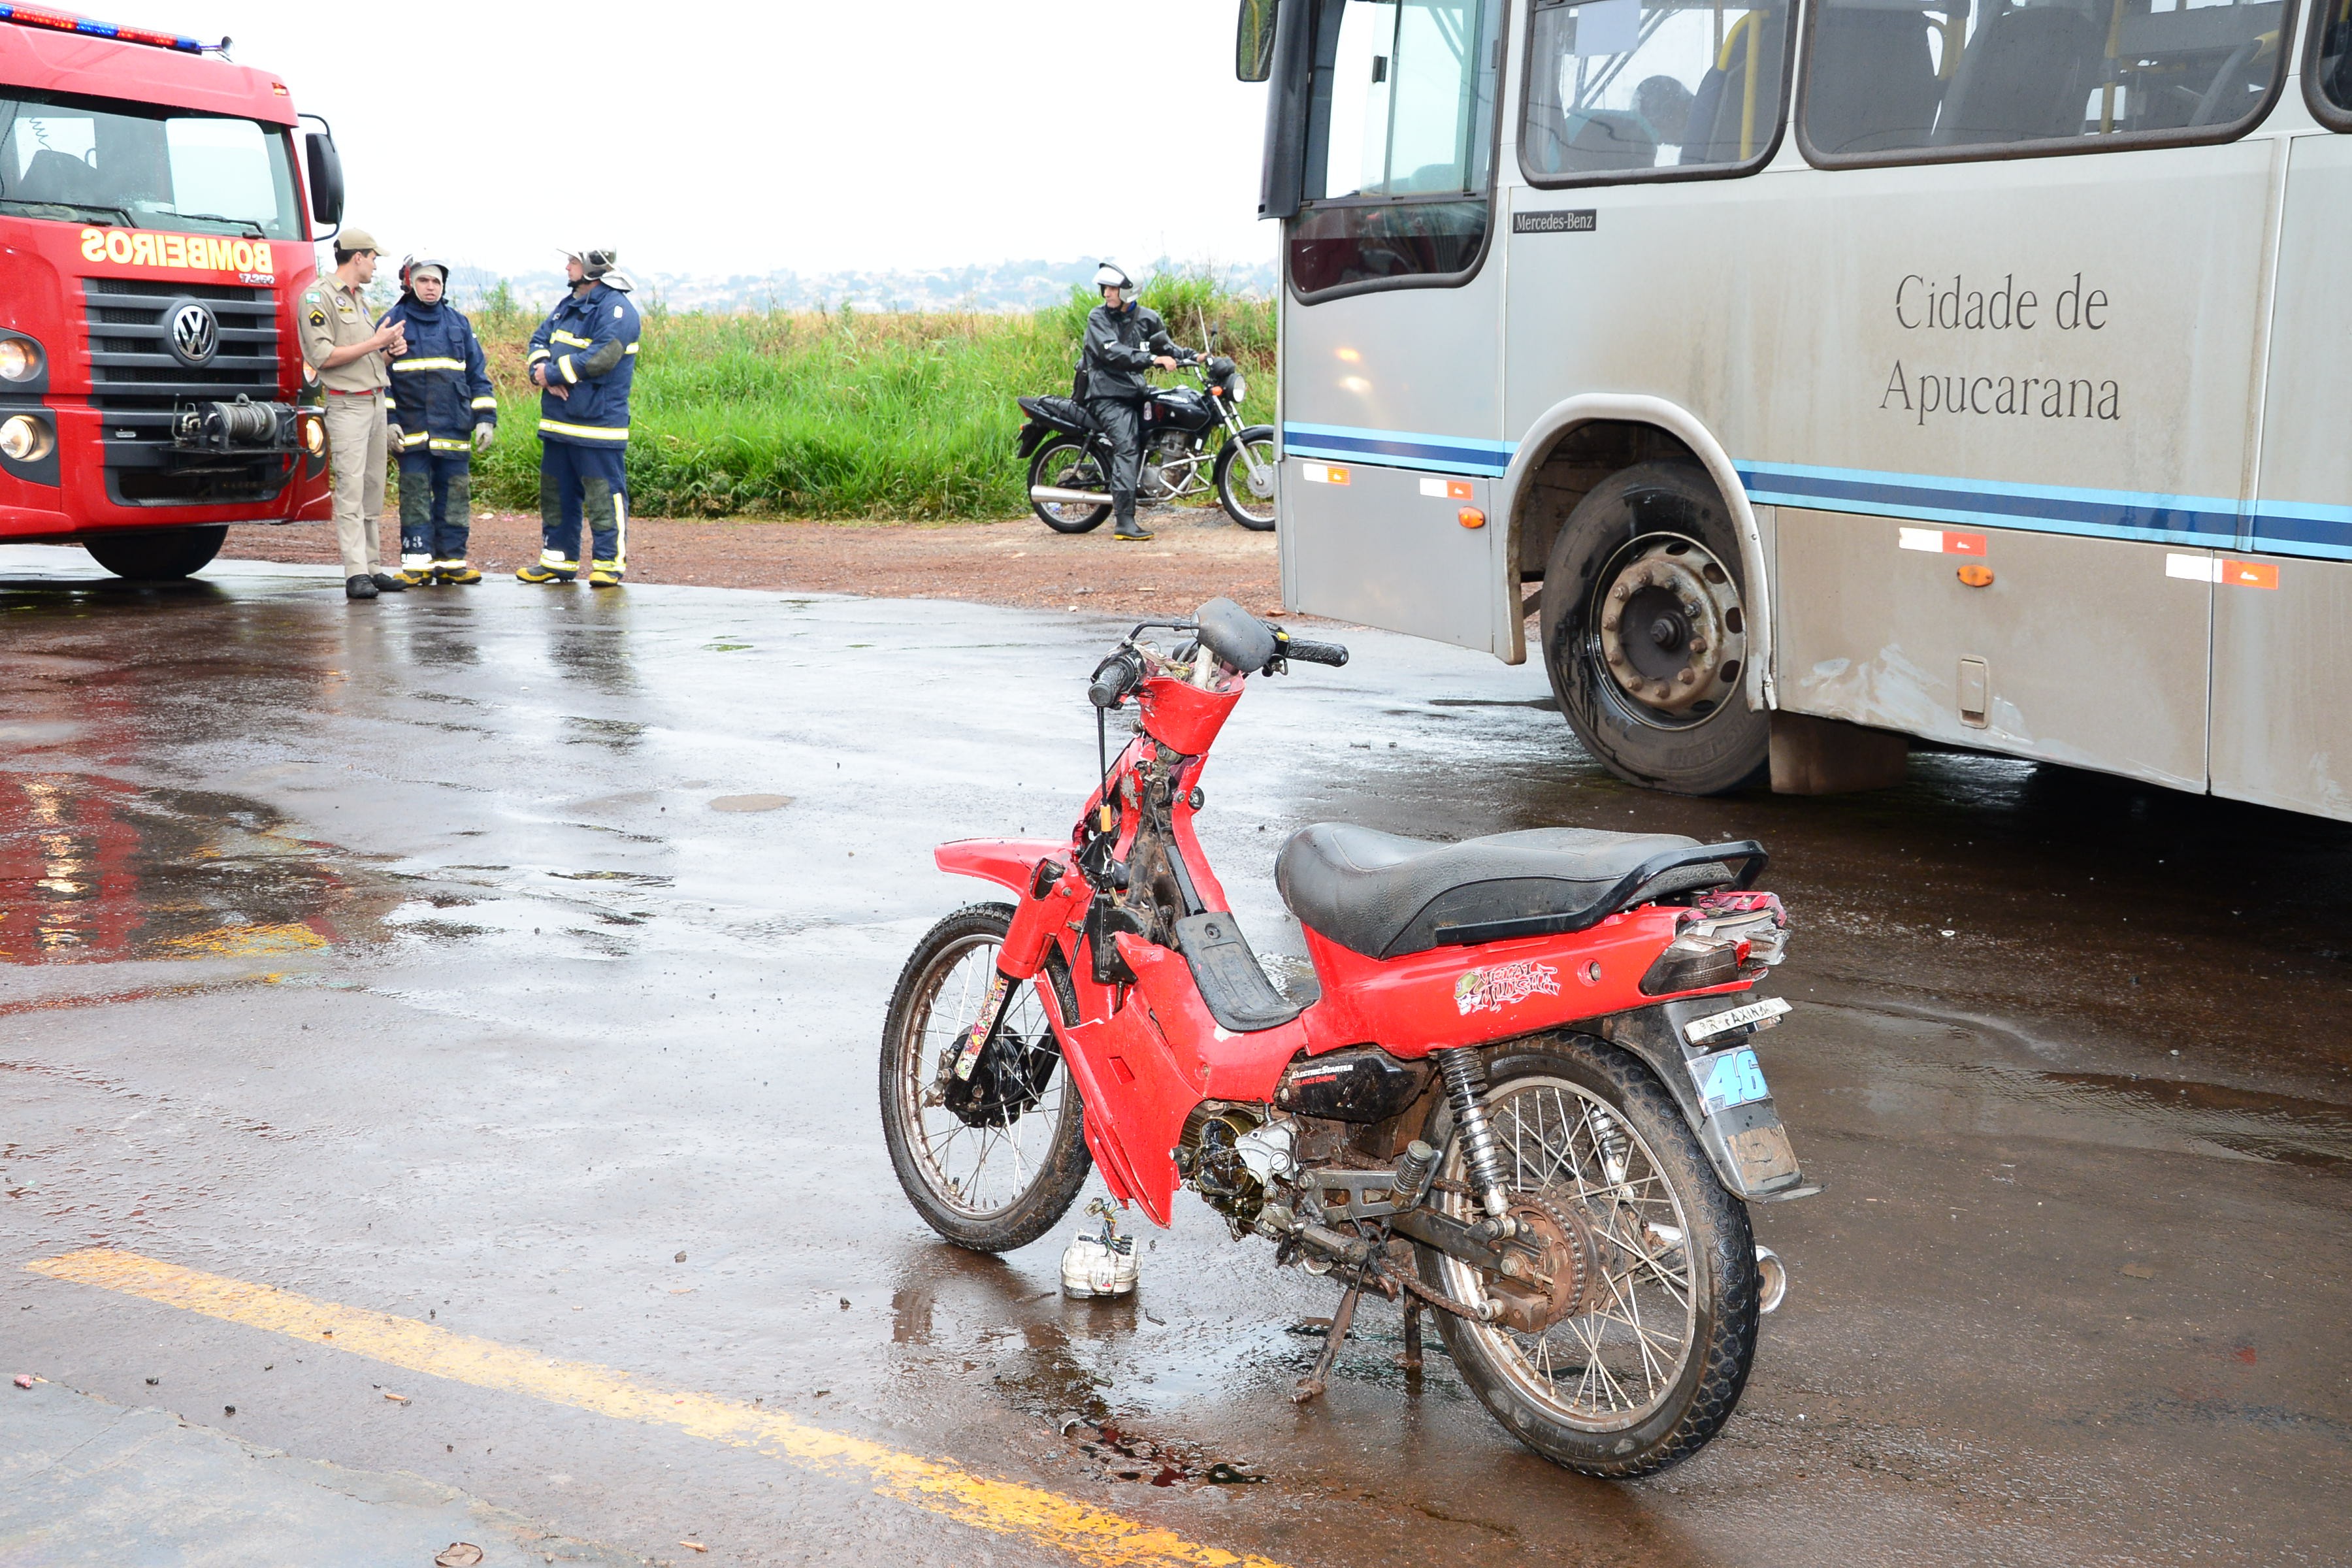 Moto e um ônibus se envolvem em acidente no Jardim Menegazzo - Foto: Delair Gacia